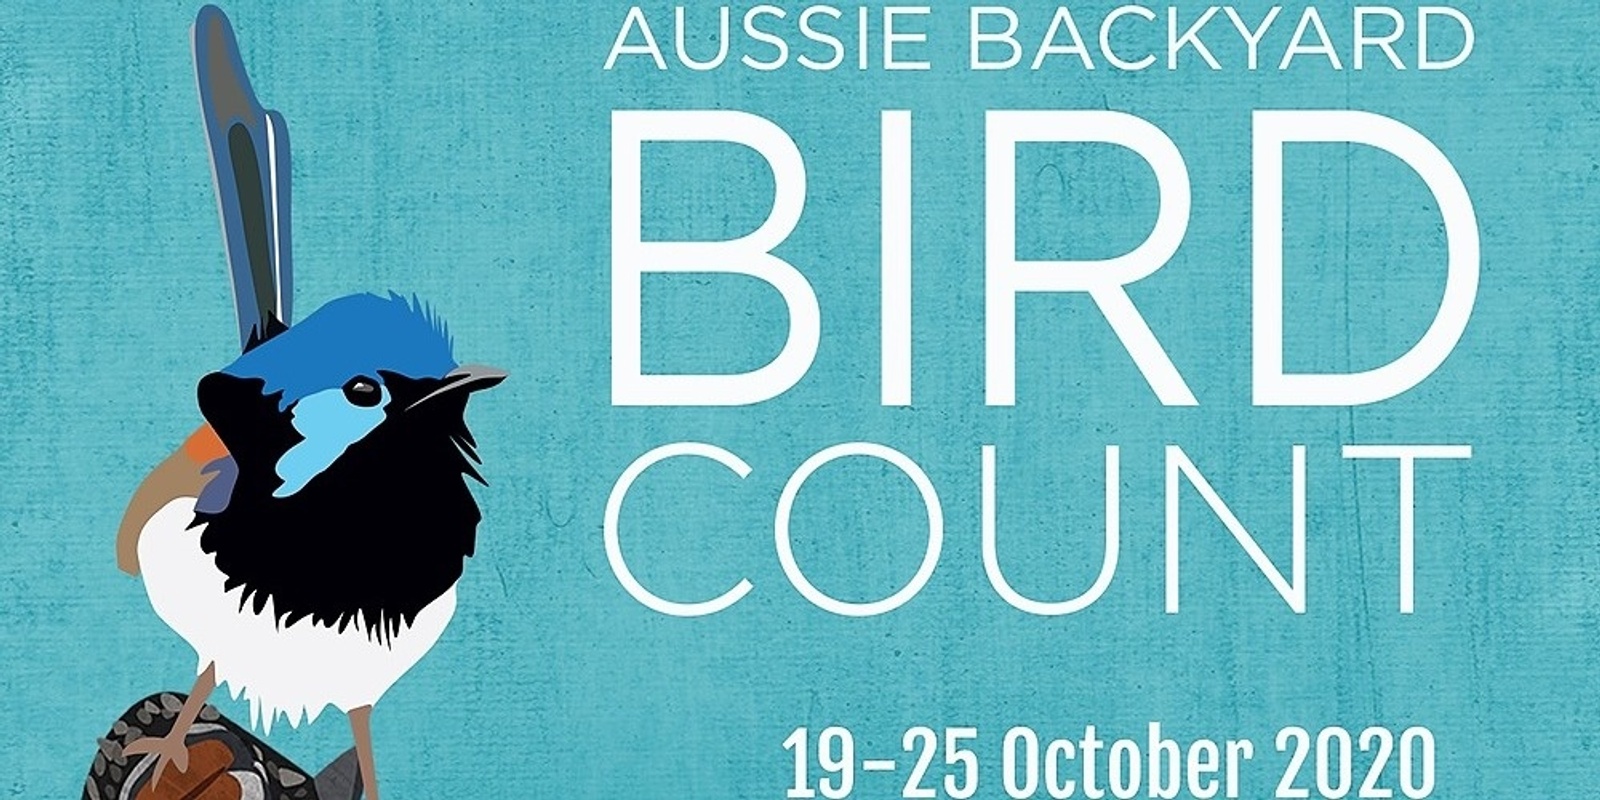 Banner image for Aussie backyard bird count Picton Botanic Gardens